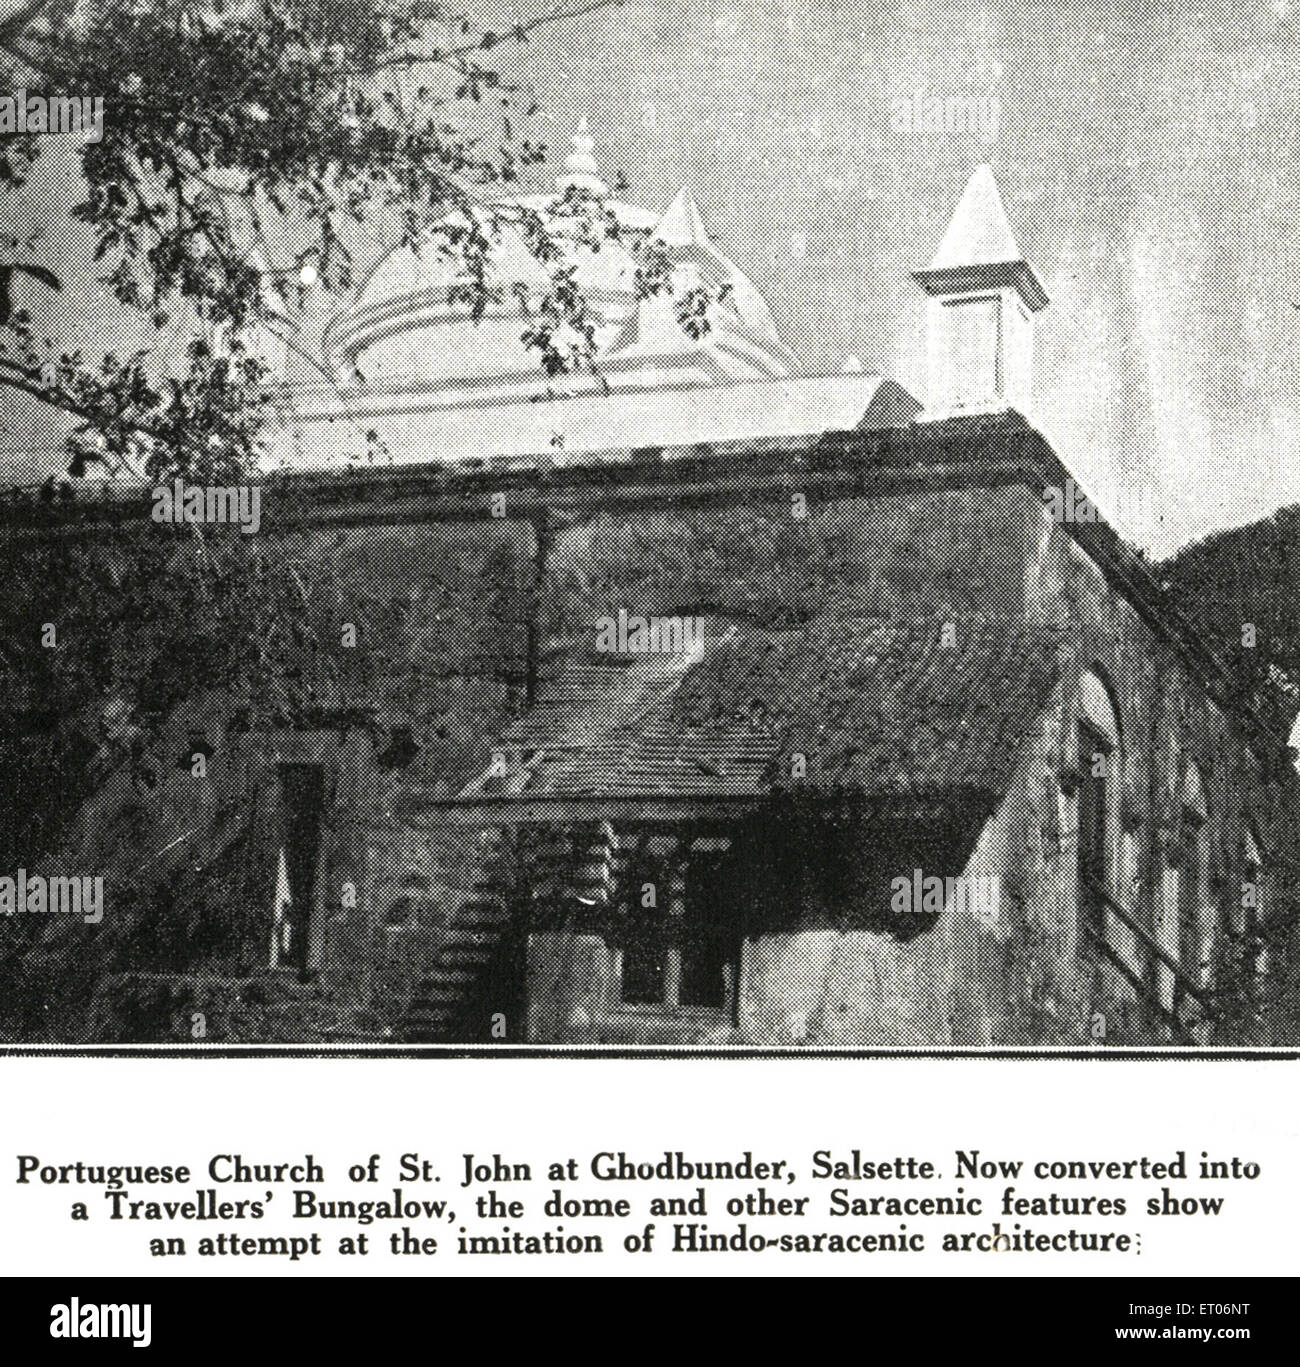 Chiesa portoghese di St John Ghodbunder Salsette convertito del viaggiatore cupola bungalow imitazione di Hindoo architettura saracenic Foto Stock